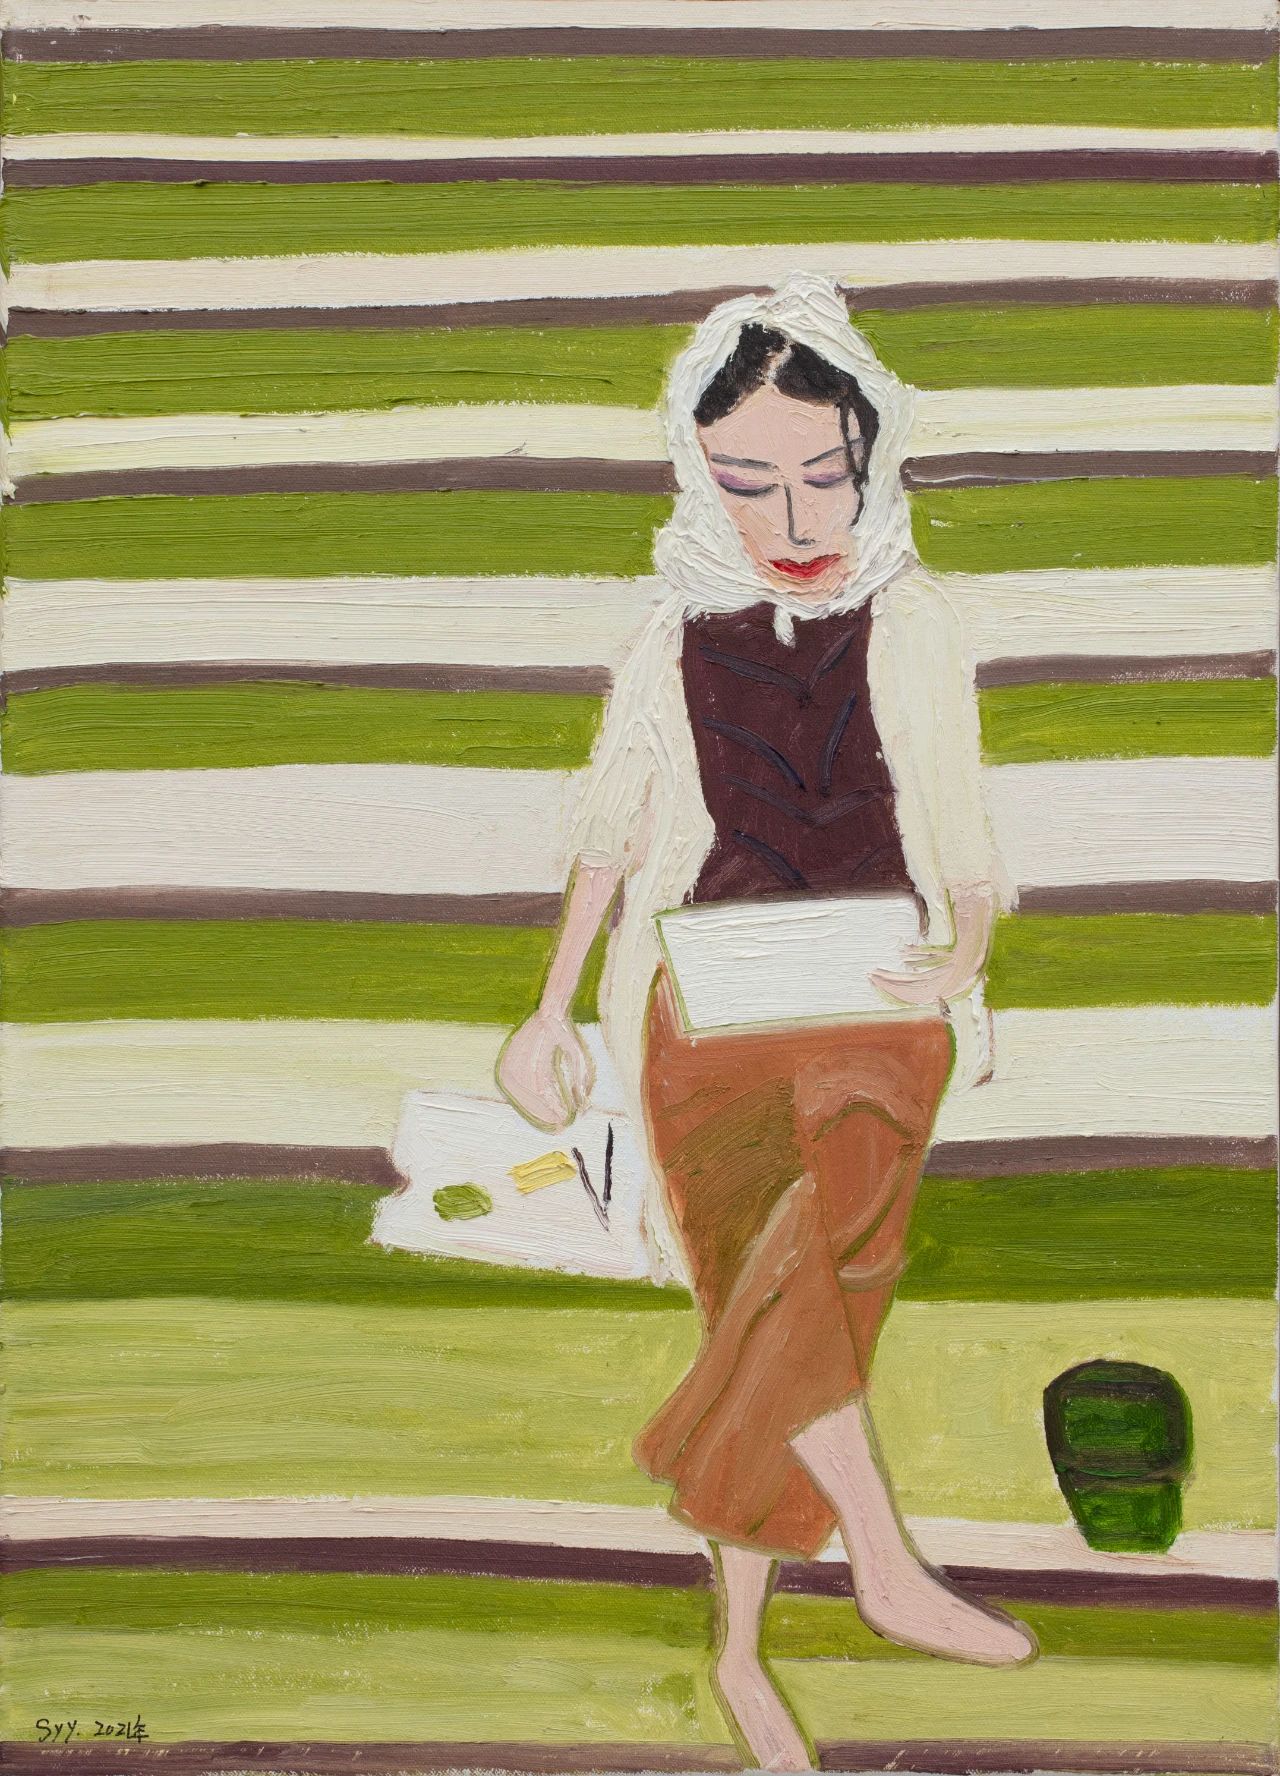 孙瑶瑶《台阶》｜ Sun Yaoyao, Steps布面油画 Oil on canvas70x50cm，2021